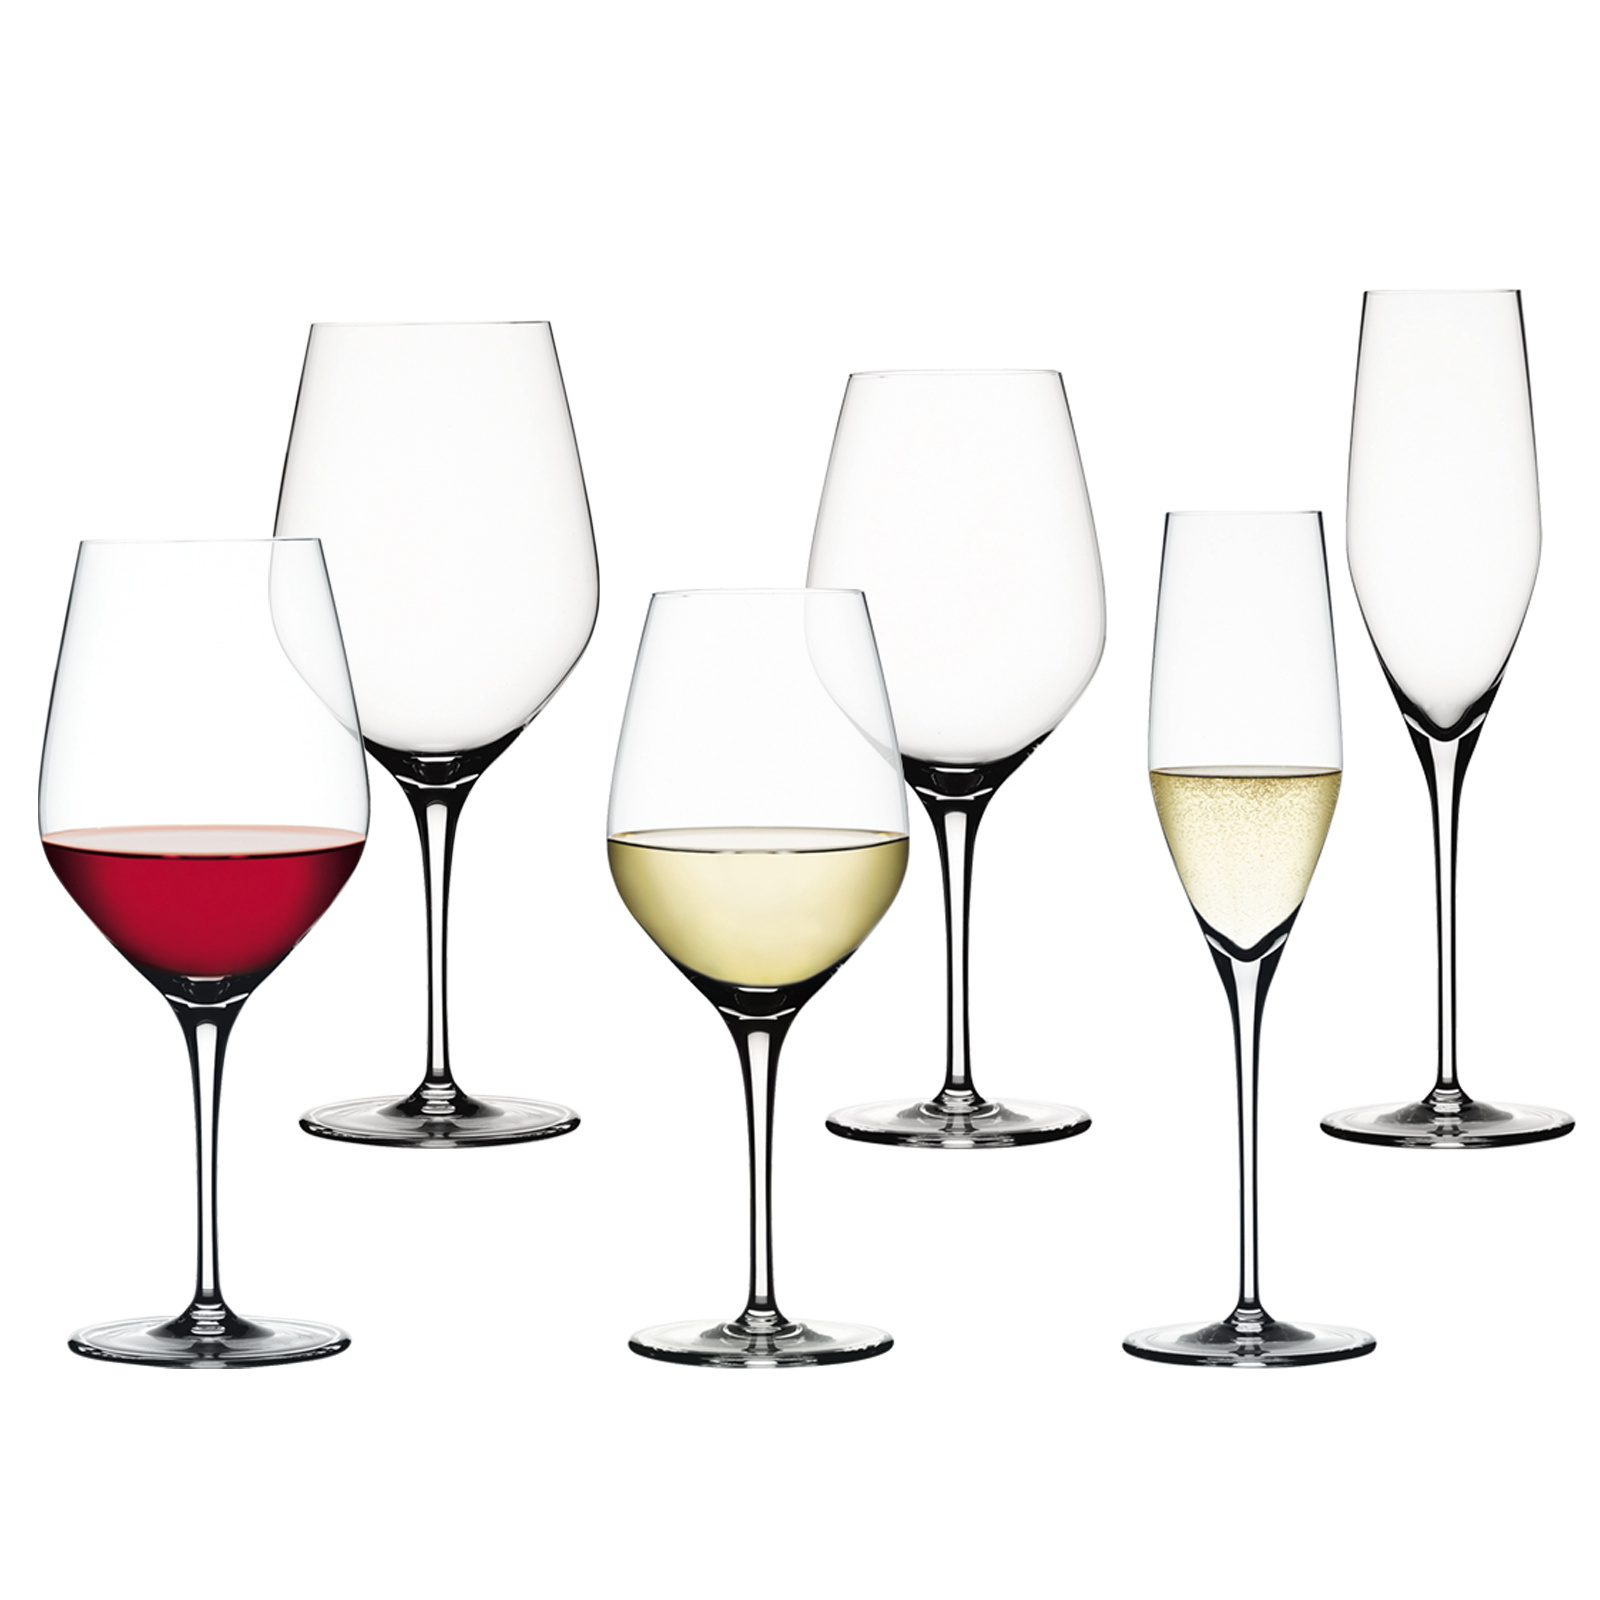 スターターセットu003e 赤ワイン/白ワイン/シャンパングラス(6個入) - シュピゲラウ 《 公式 》